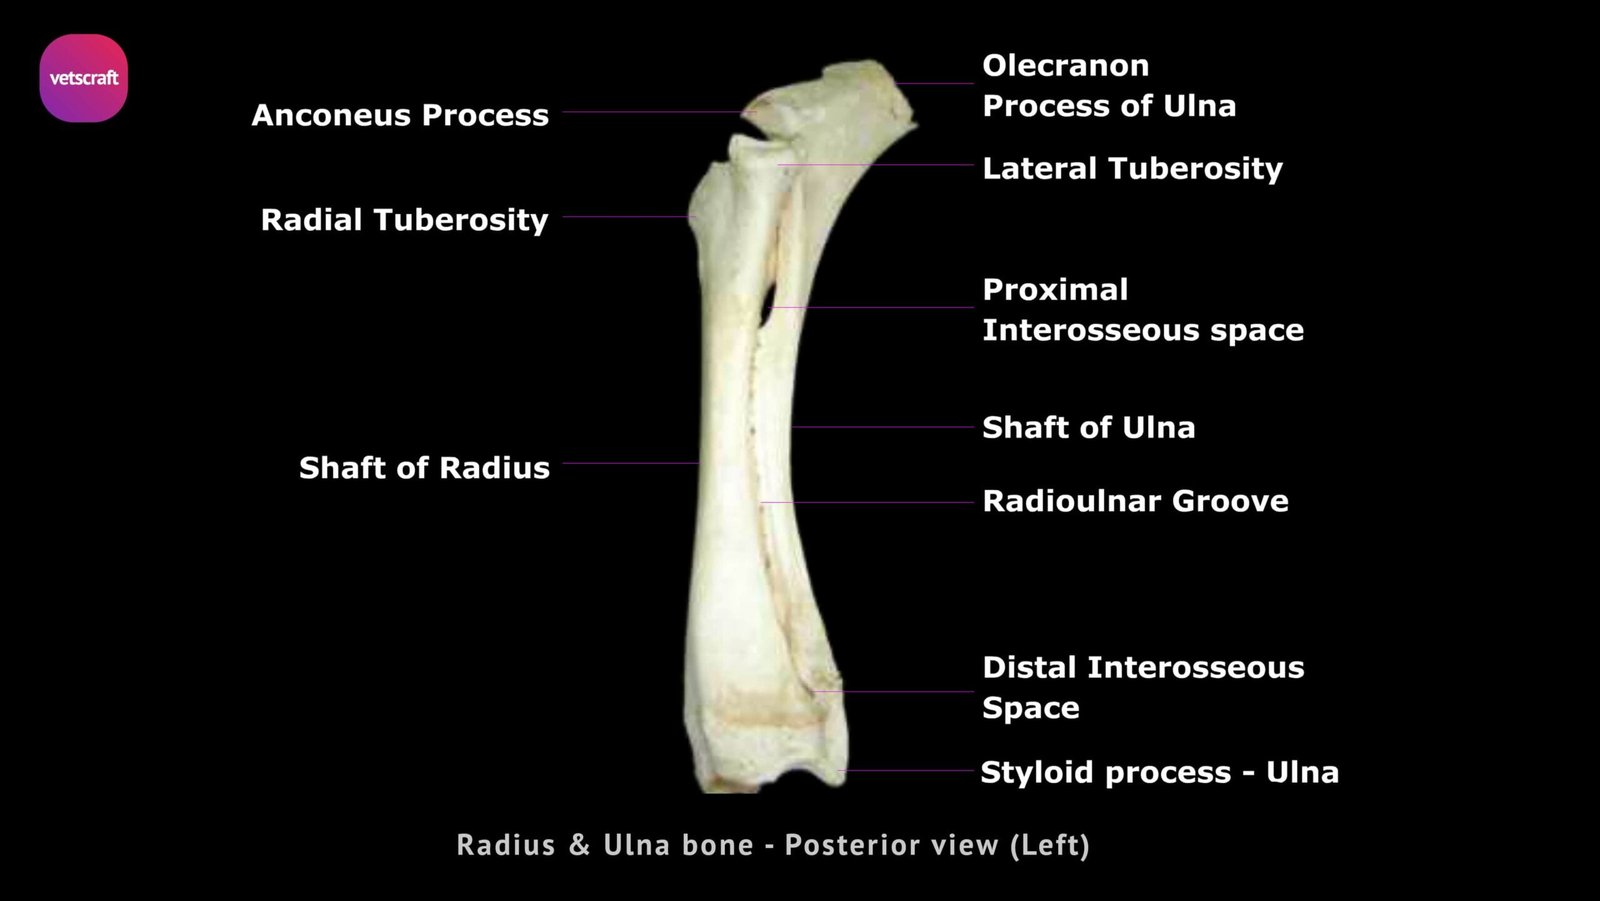 human radius and ulna